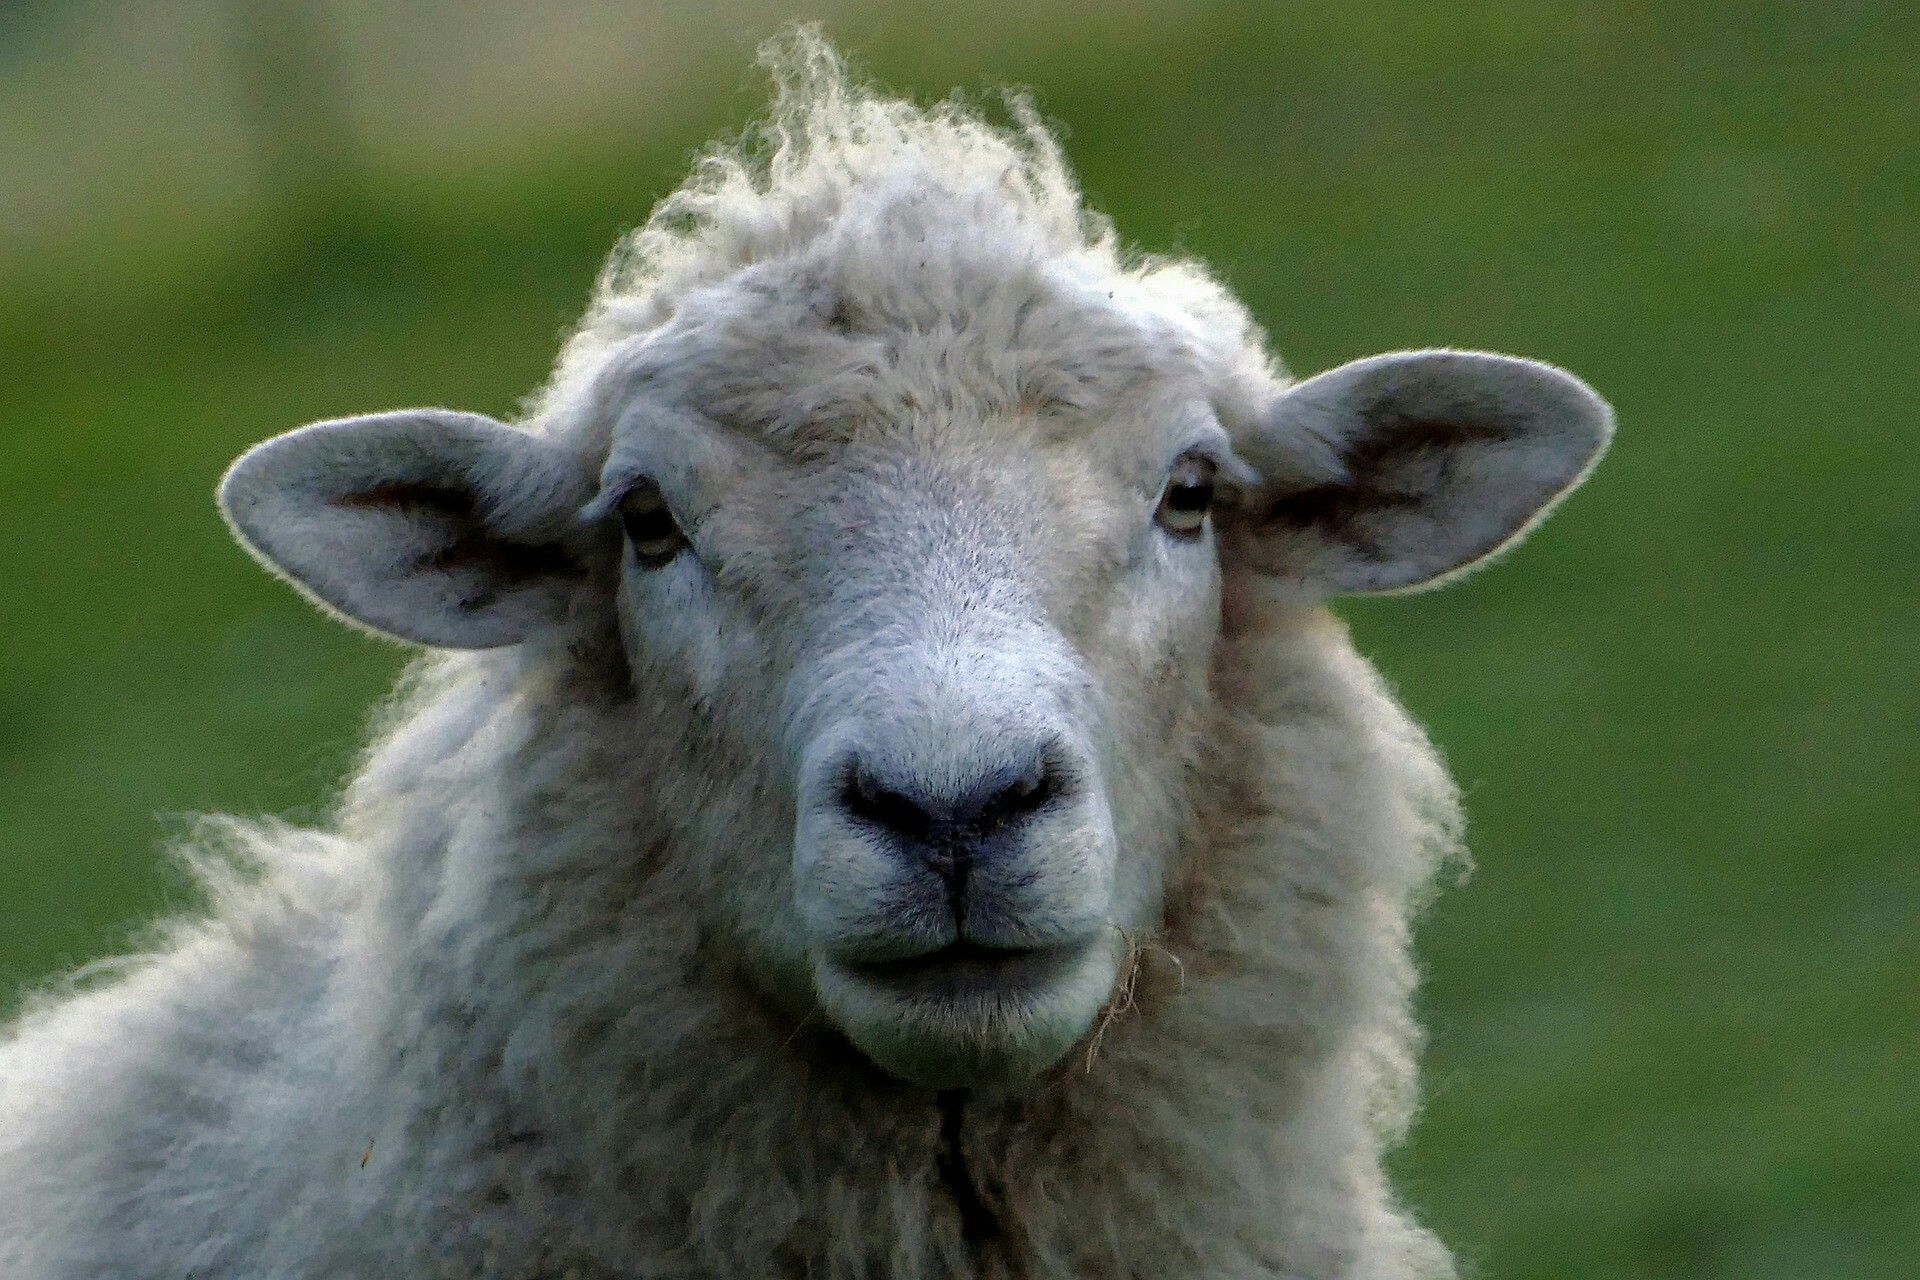 گوسفند زنده تهران